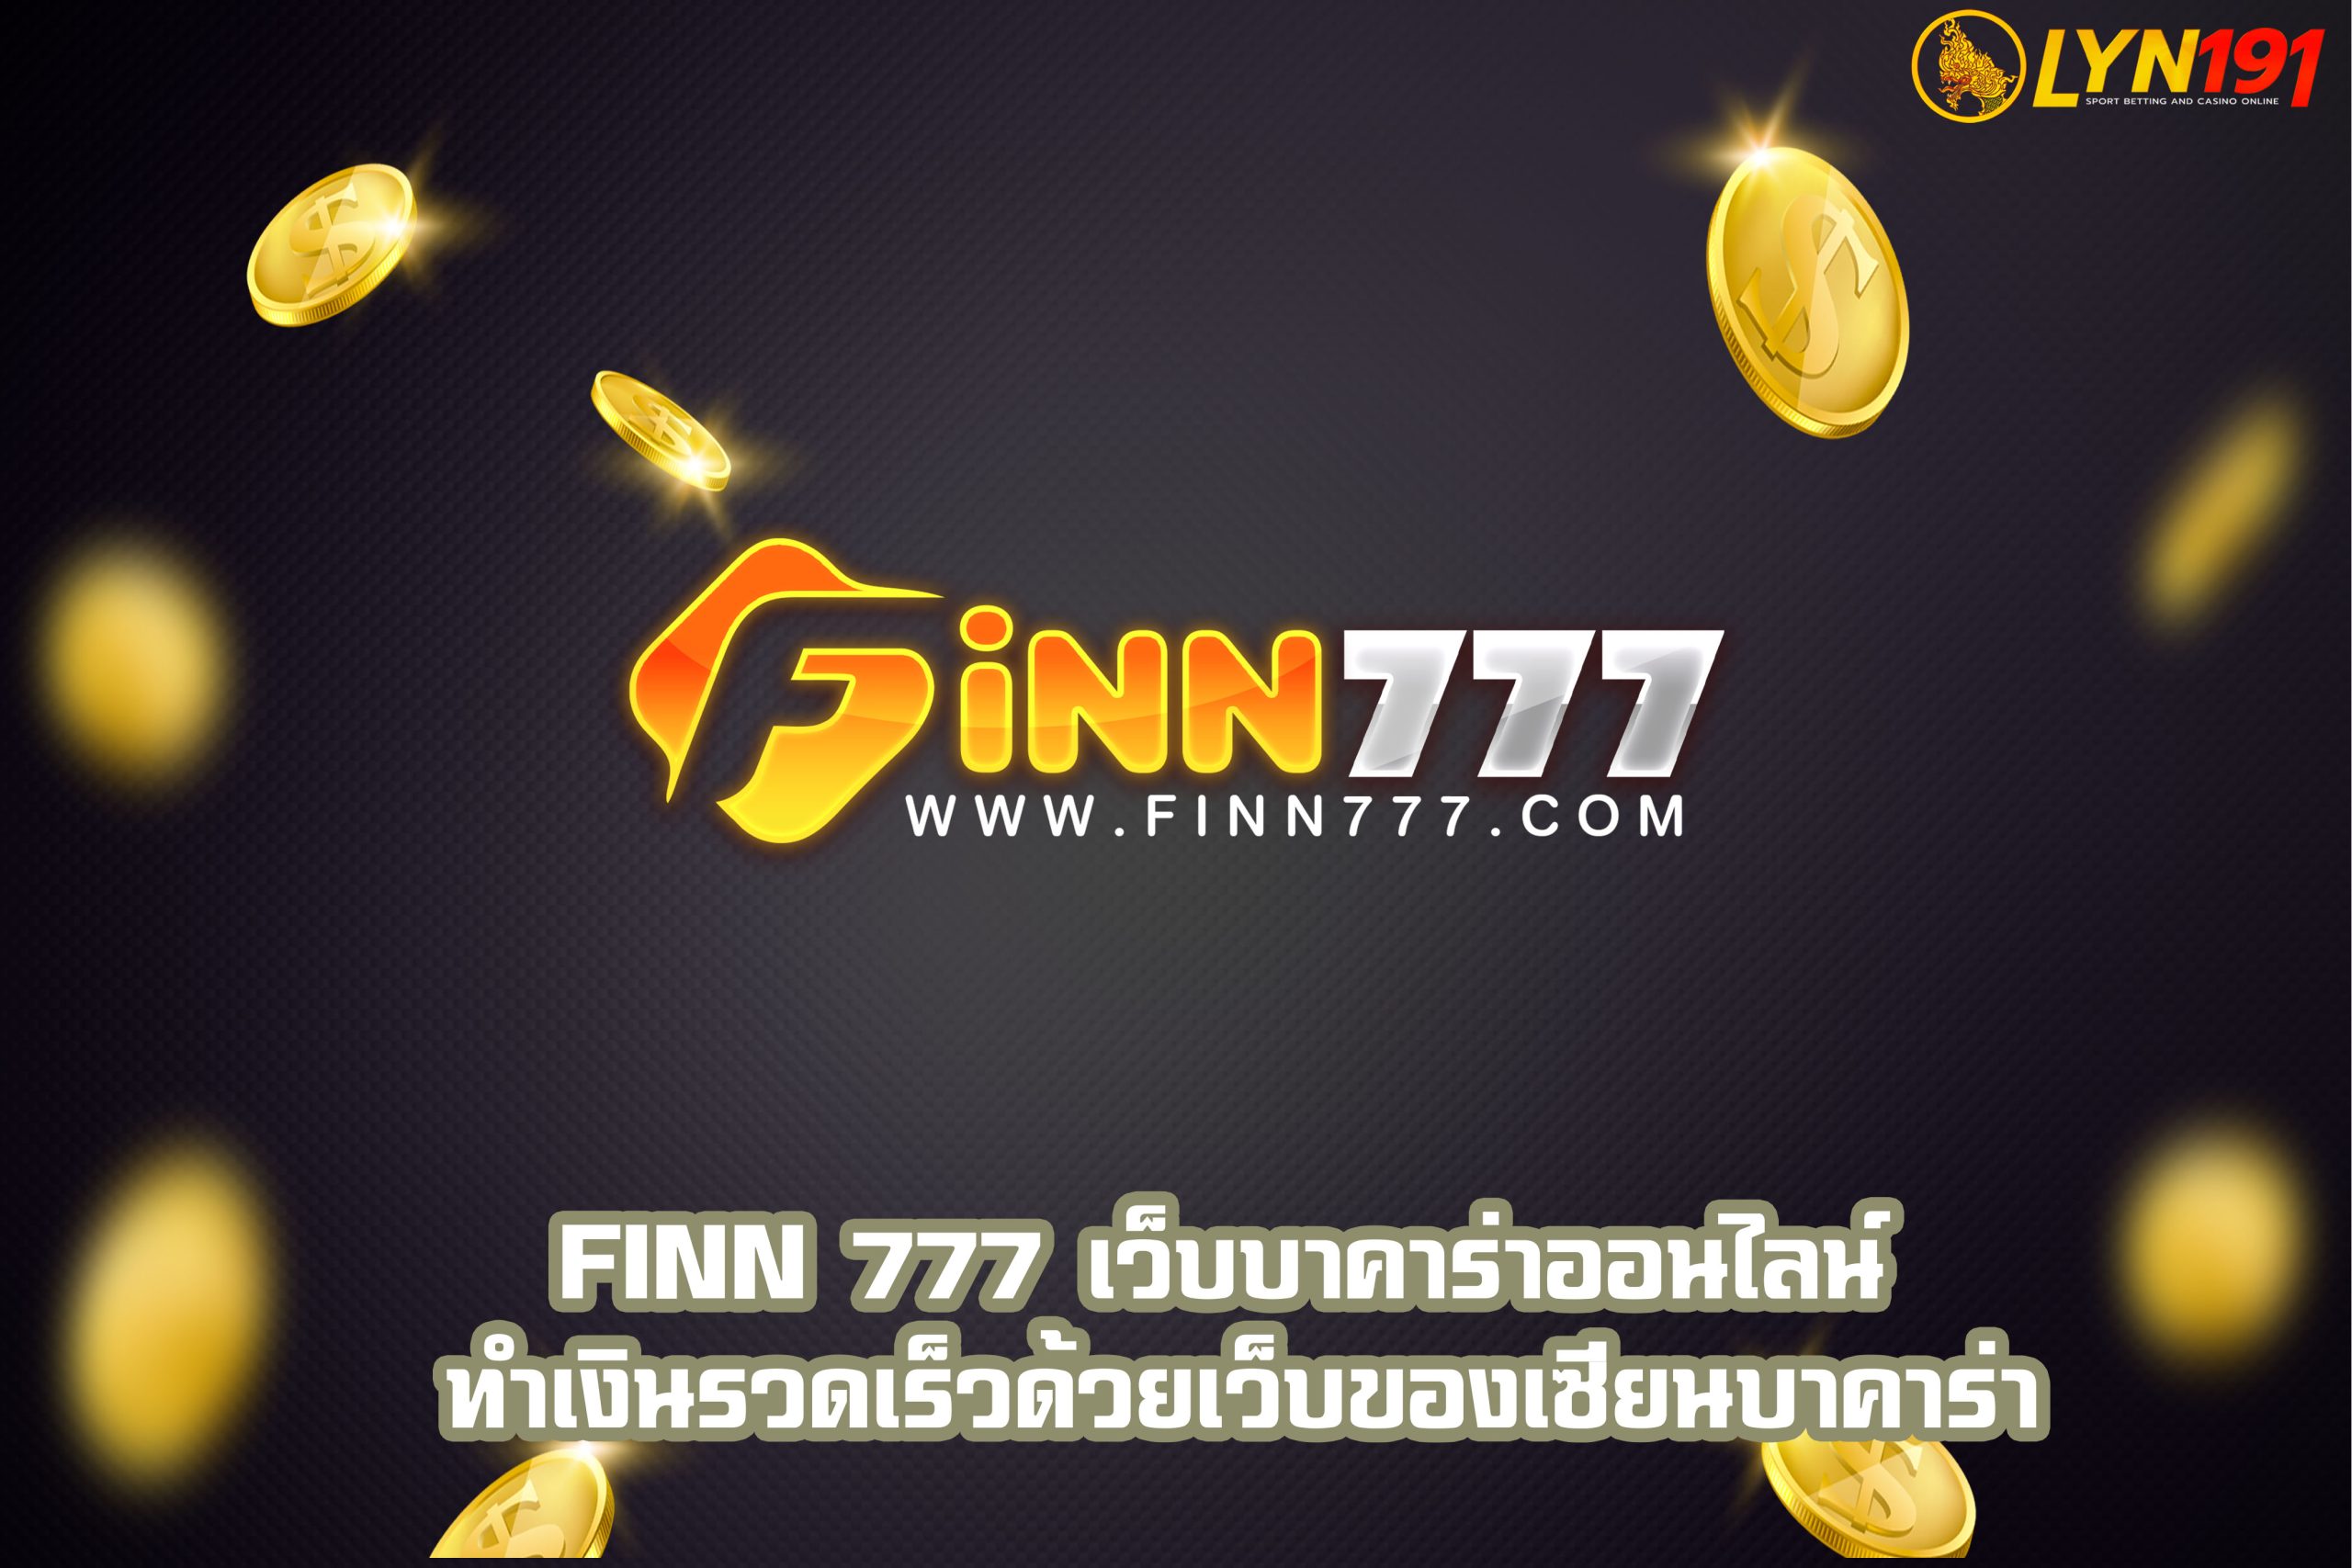 FiNN 777 เว็บบาคาร่าออนไลน์ ทำเงินรวดเร็วด้วยเว็บของเซียนบาคาร่า